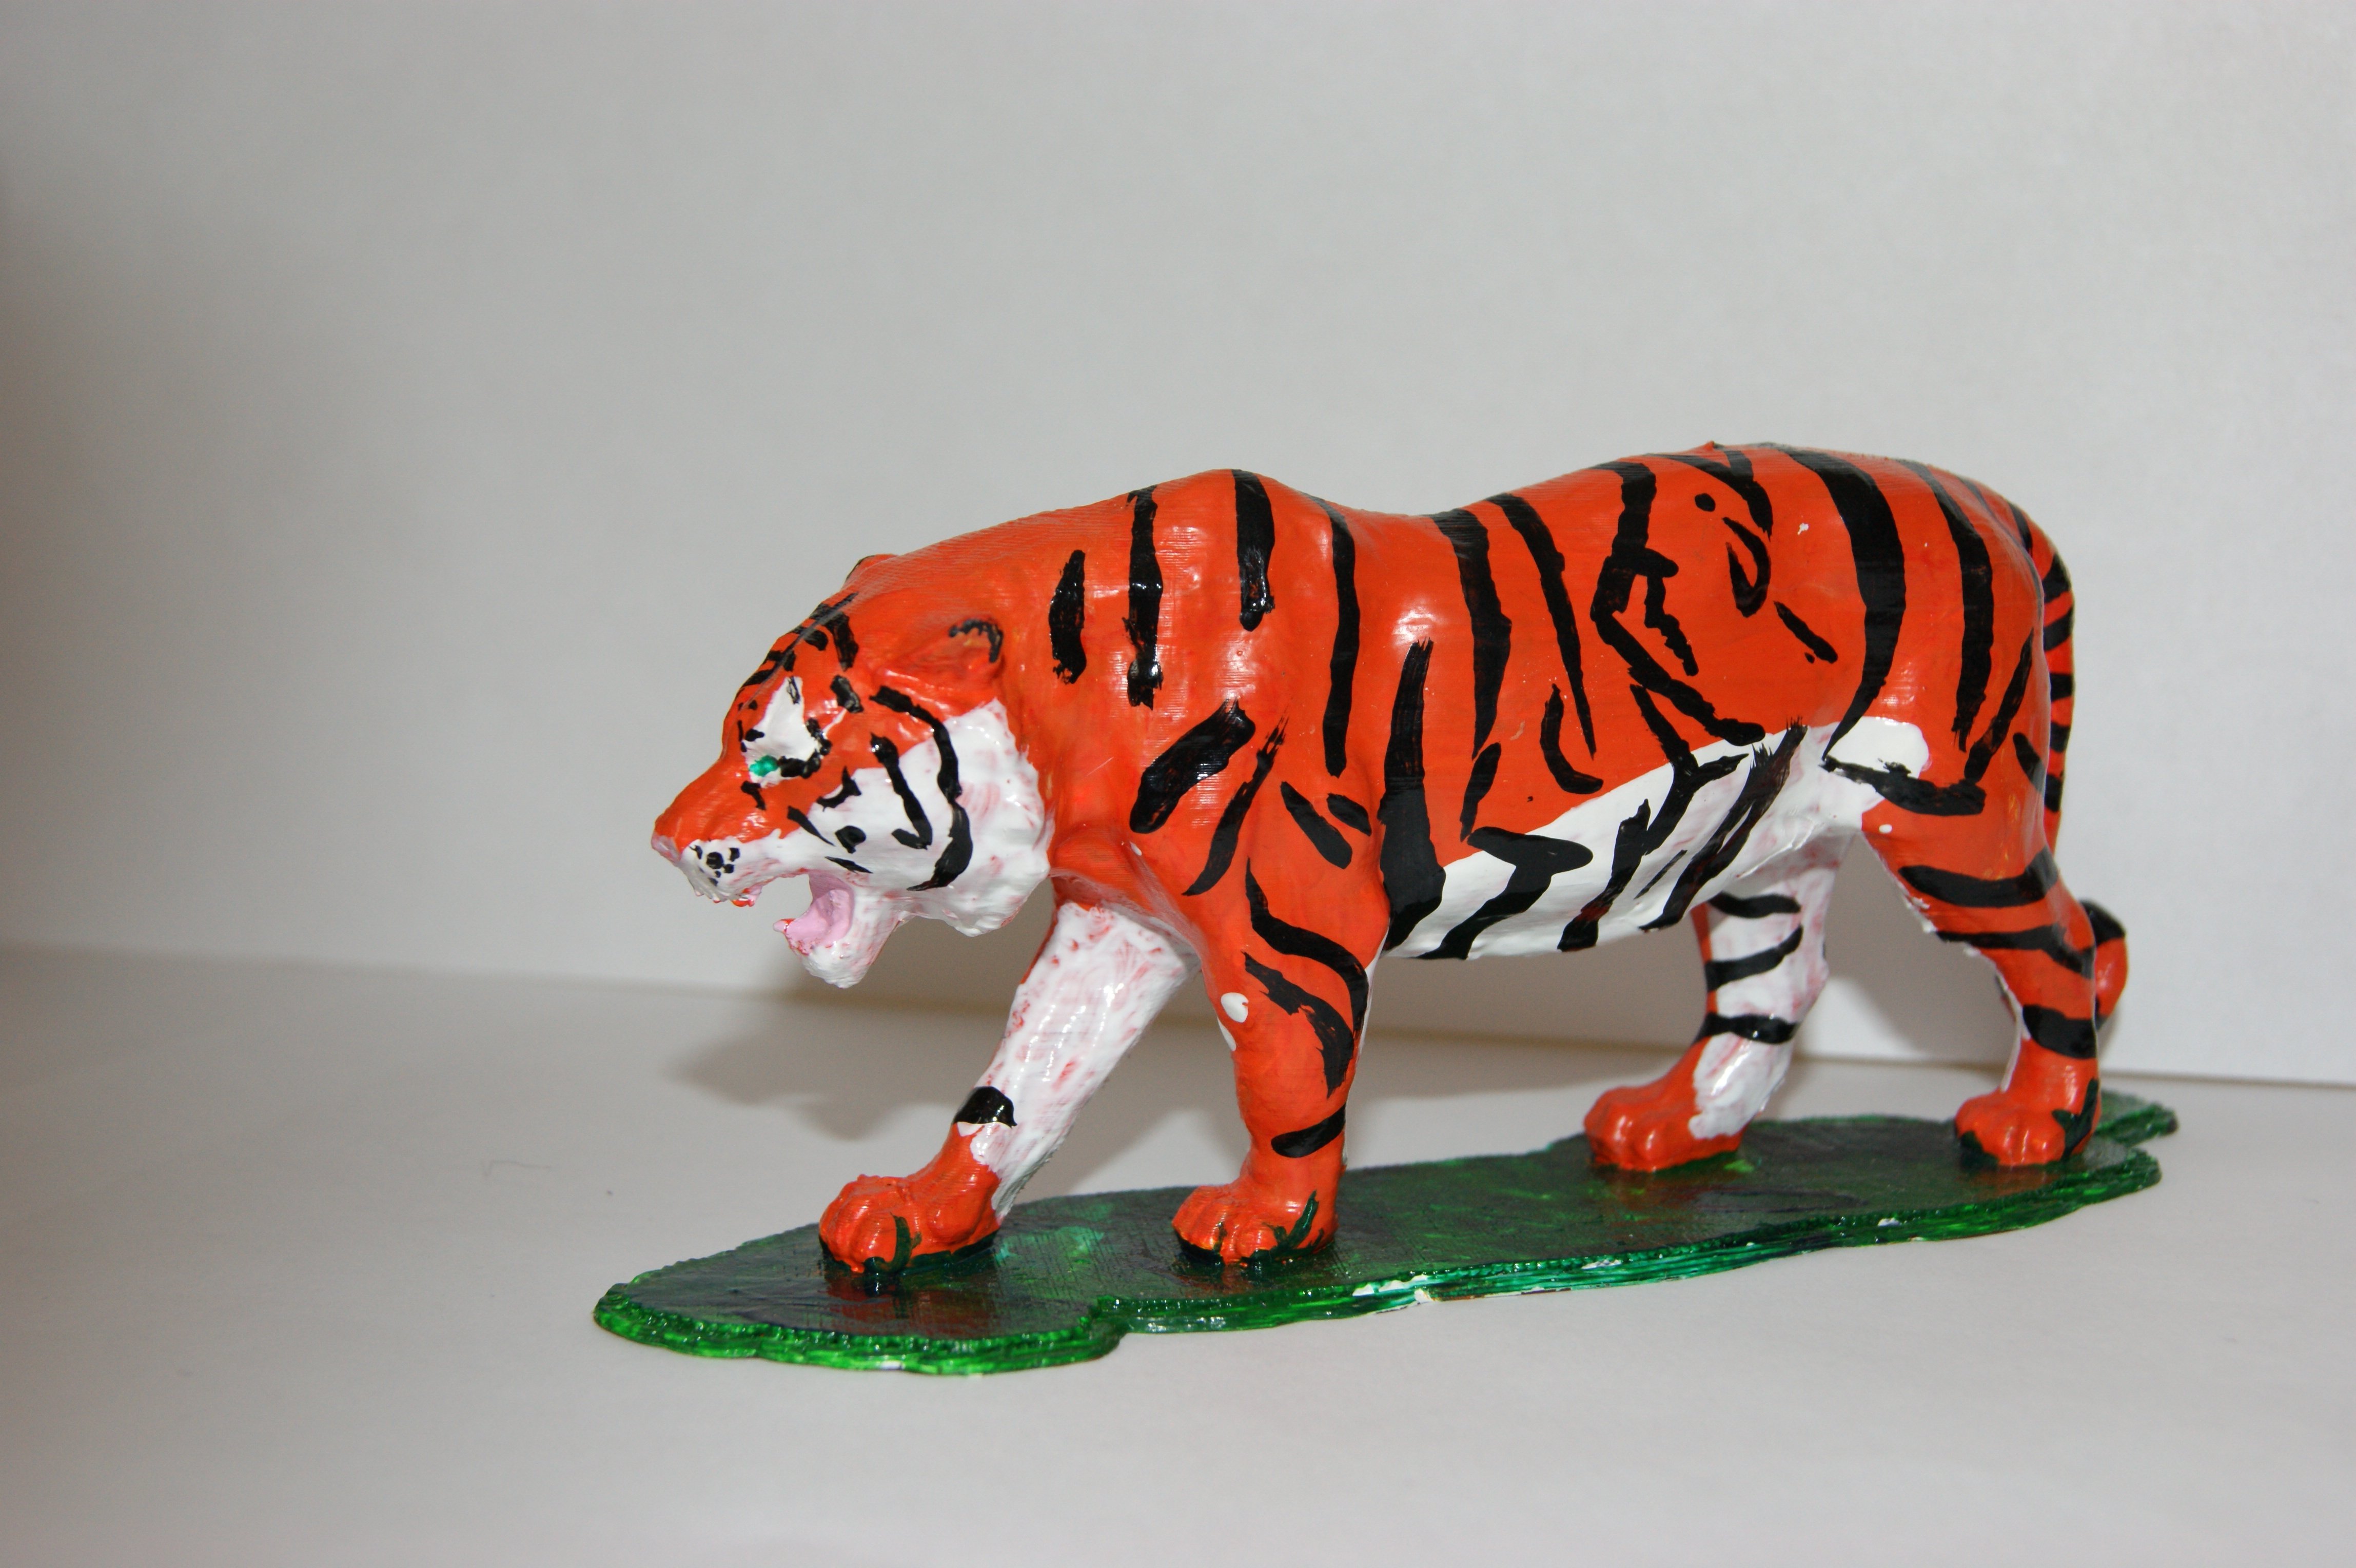 Поделки на год тигра из пластилина идеи по изготовлению своими руками фото